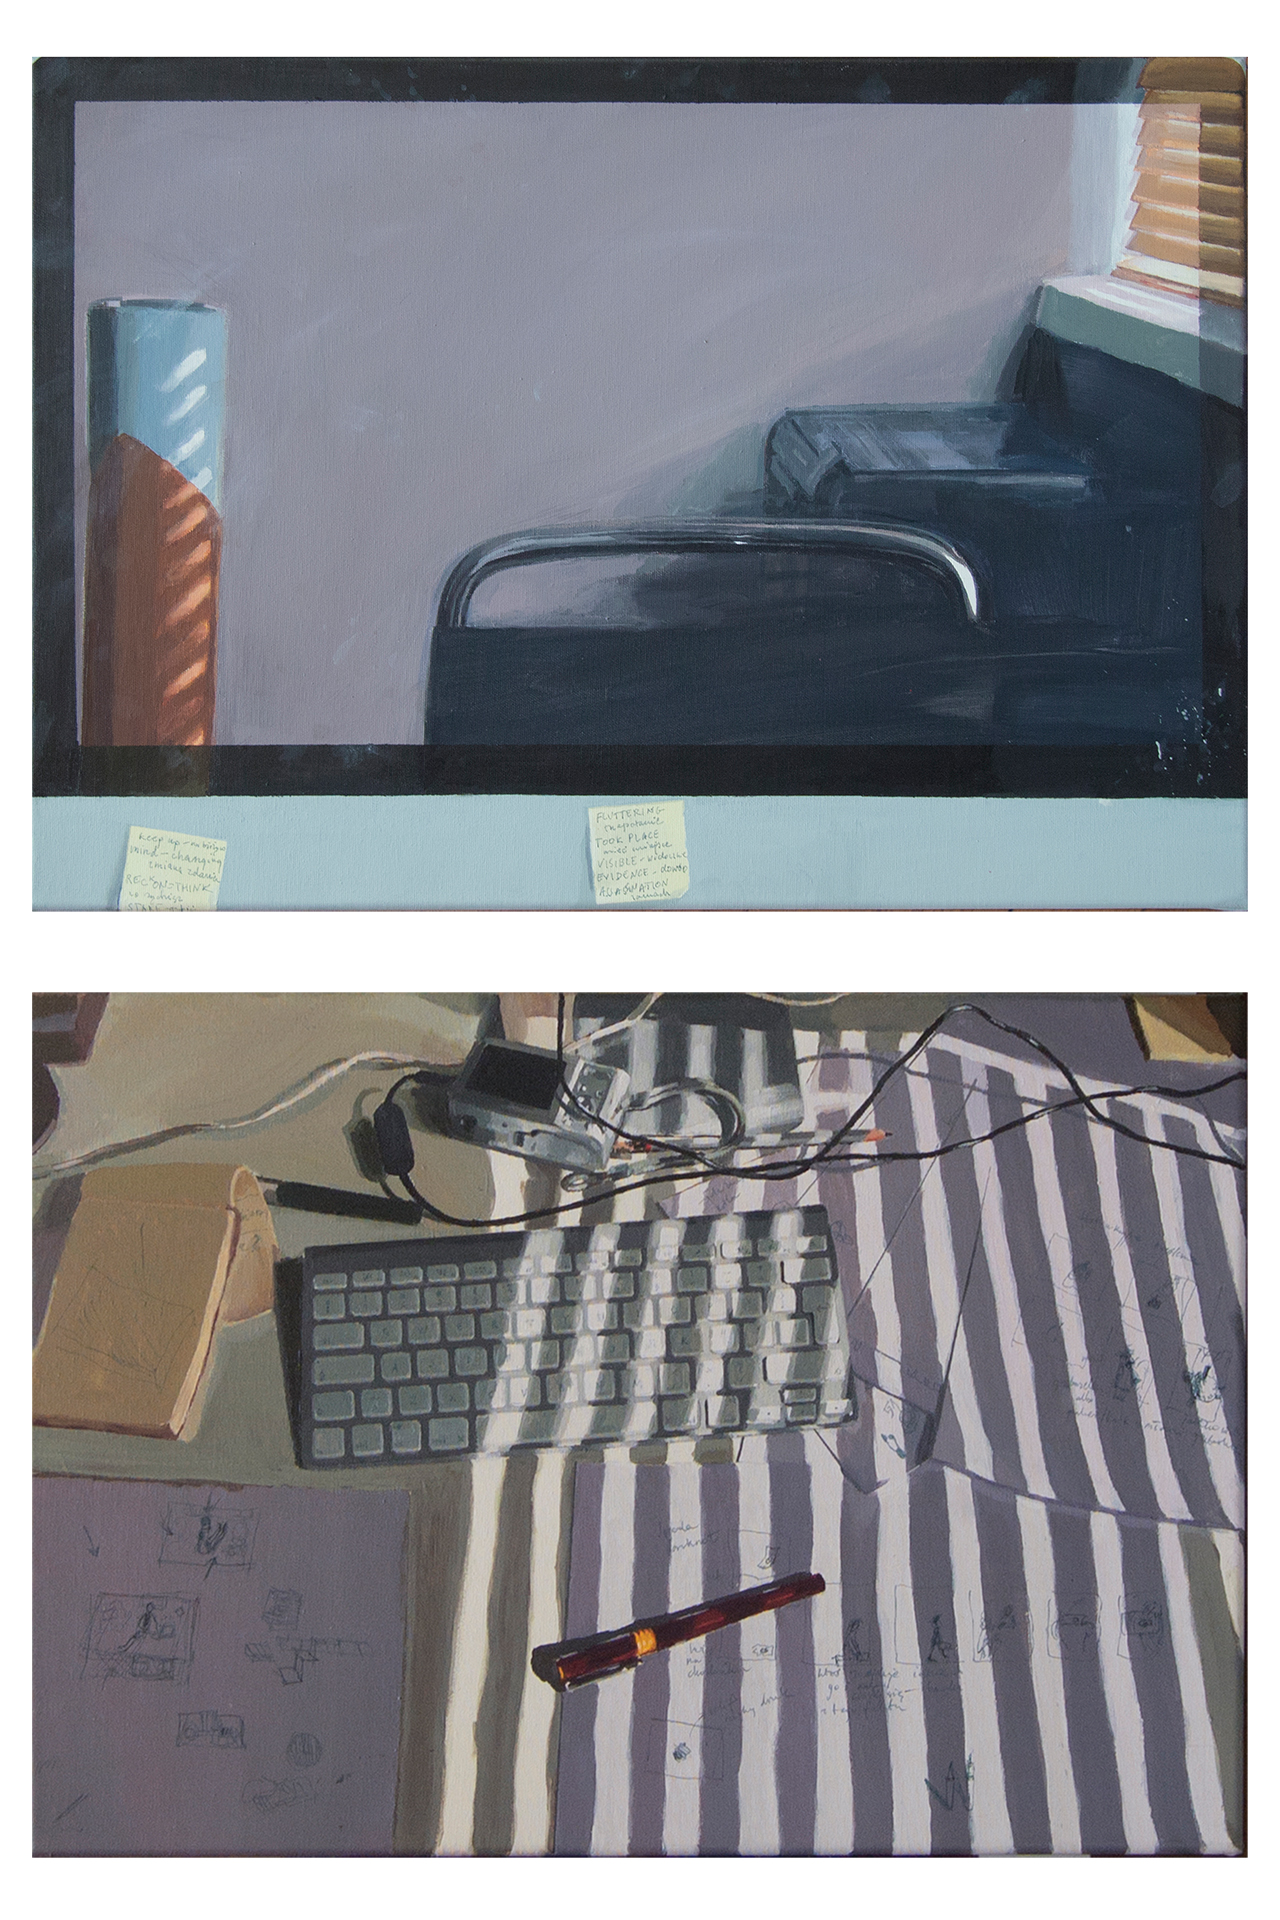 Obraz akrylowy na płótnie ukazujący biurko z monitorem, podłączonym aparatem fotograficznym, klawiaturą, notesem i długopisem.